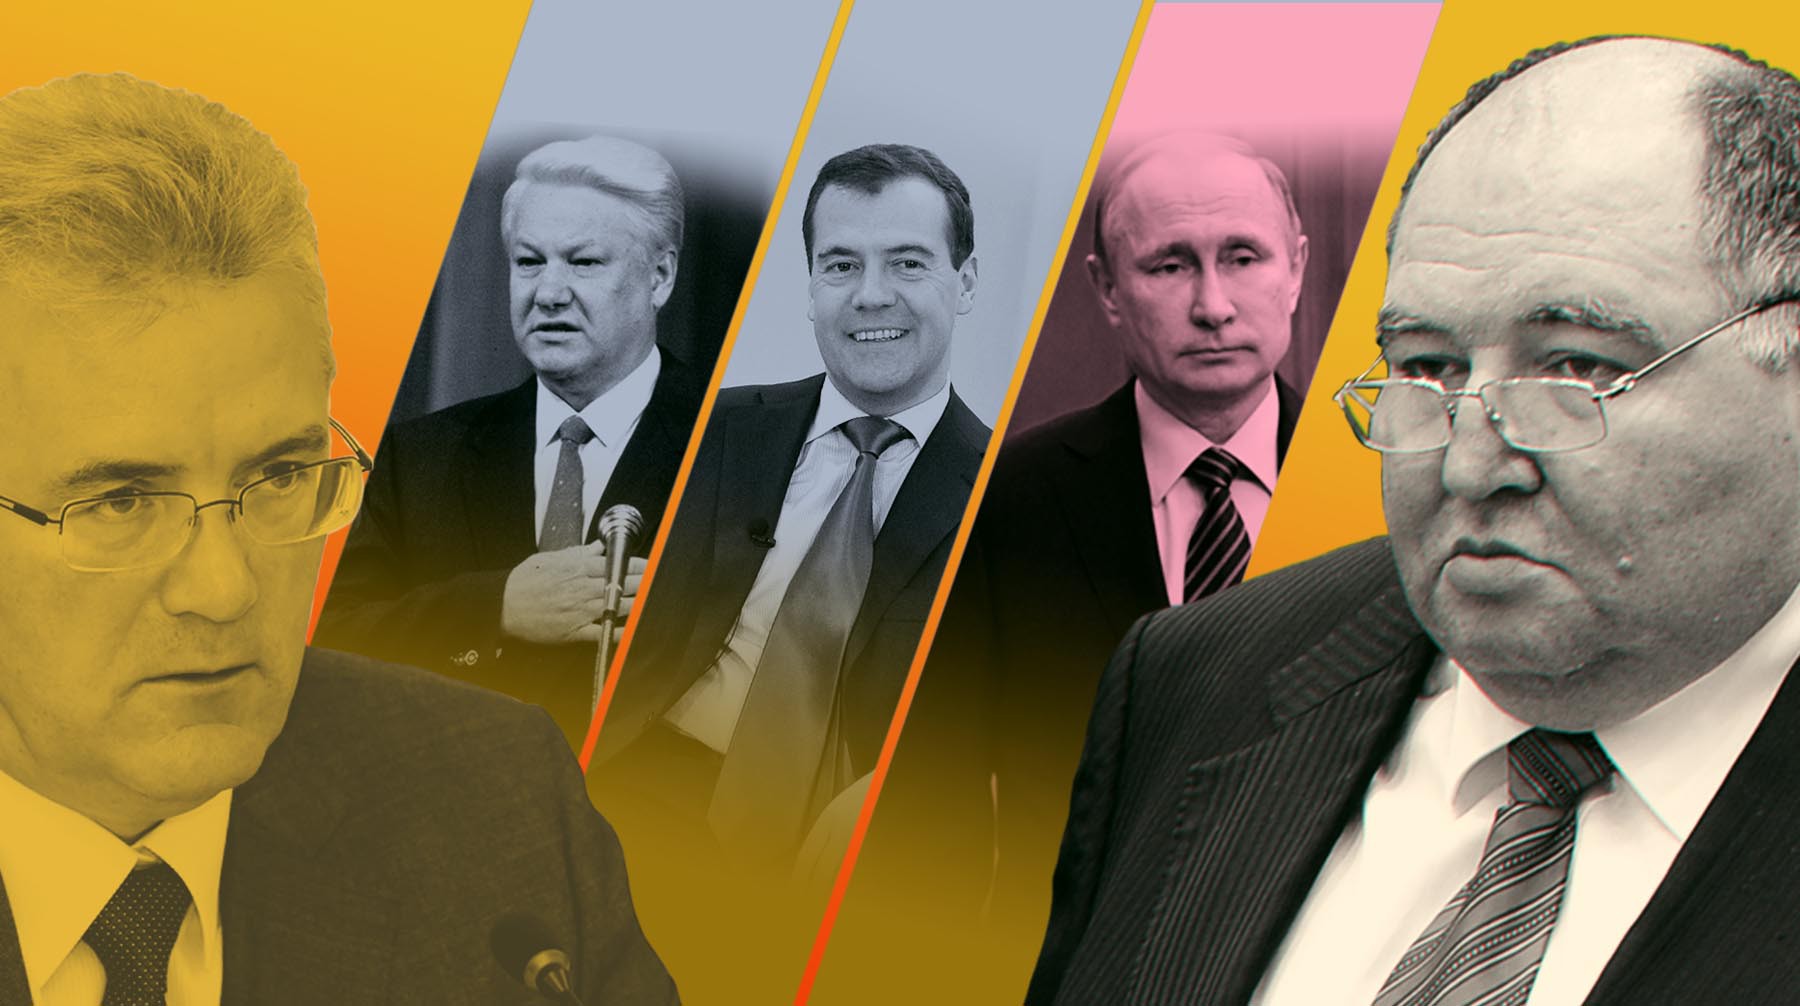 Dailystorm - Нашпиговался на короне: что можно при Ельцине и Медведеве, при Путине — нельзя